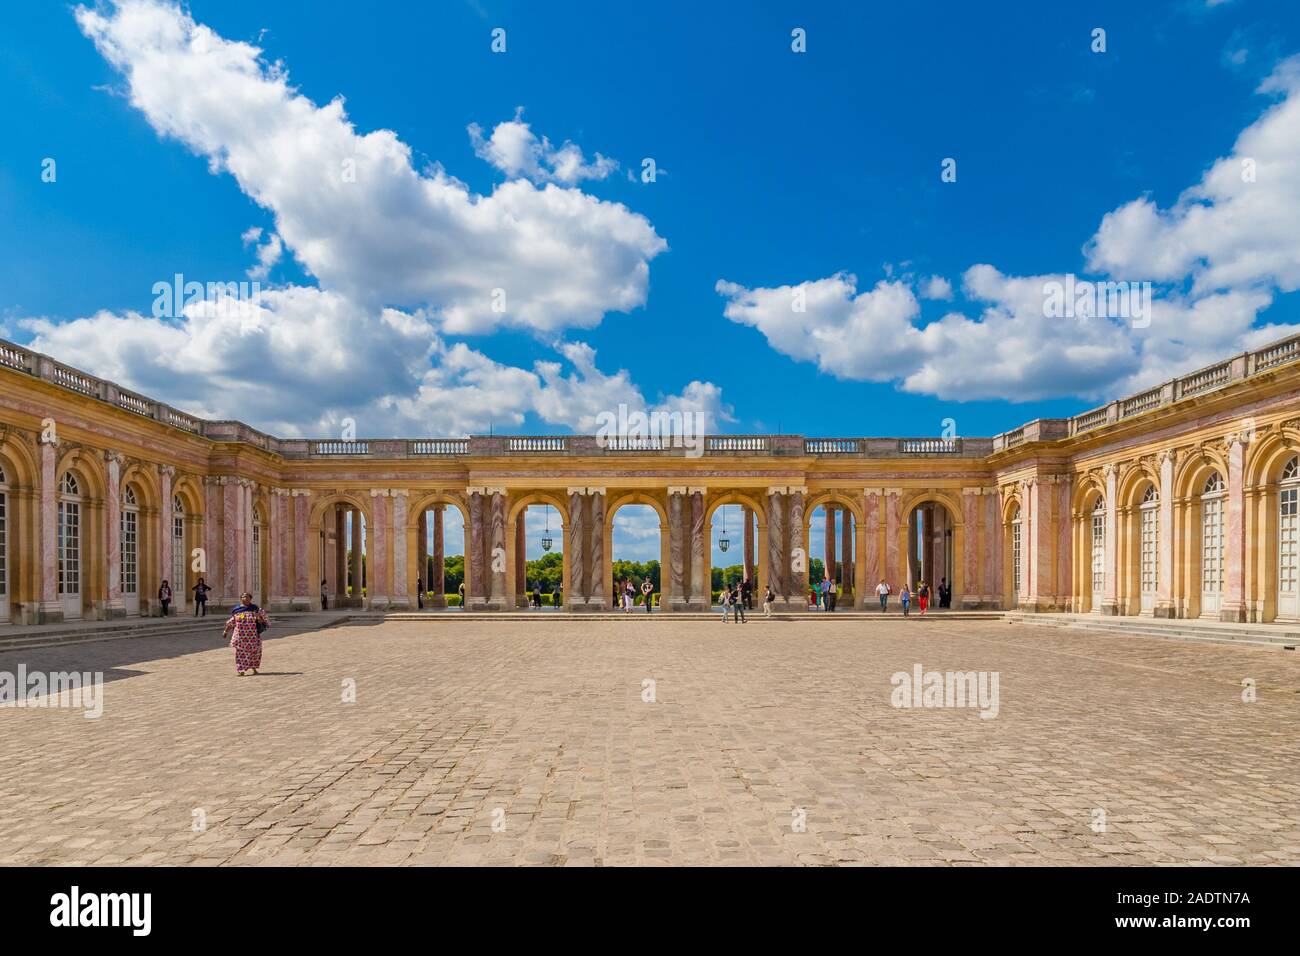 Superbe vue panoramique sur la cour intérieure et les rues pavées à l'abri de la colonnade reliant les deux ailes du célèbre Grand Trianon Palace à... Banque D'Images